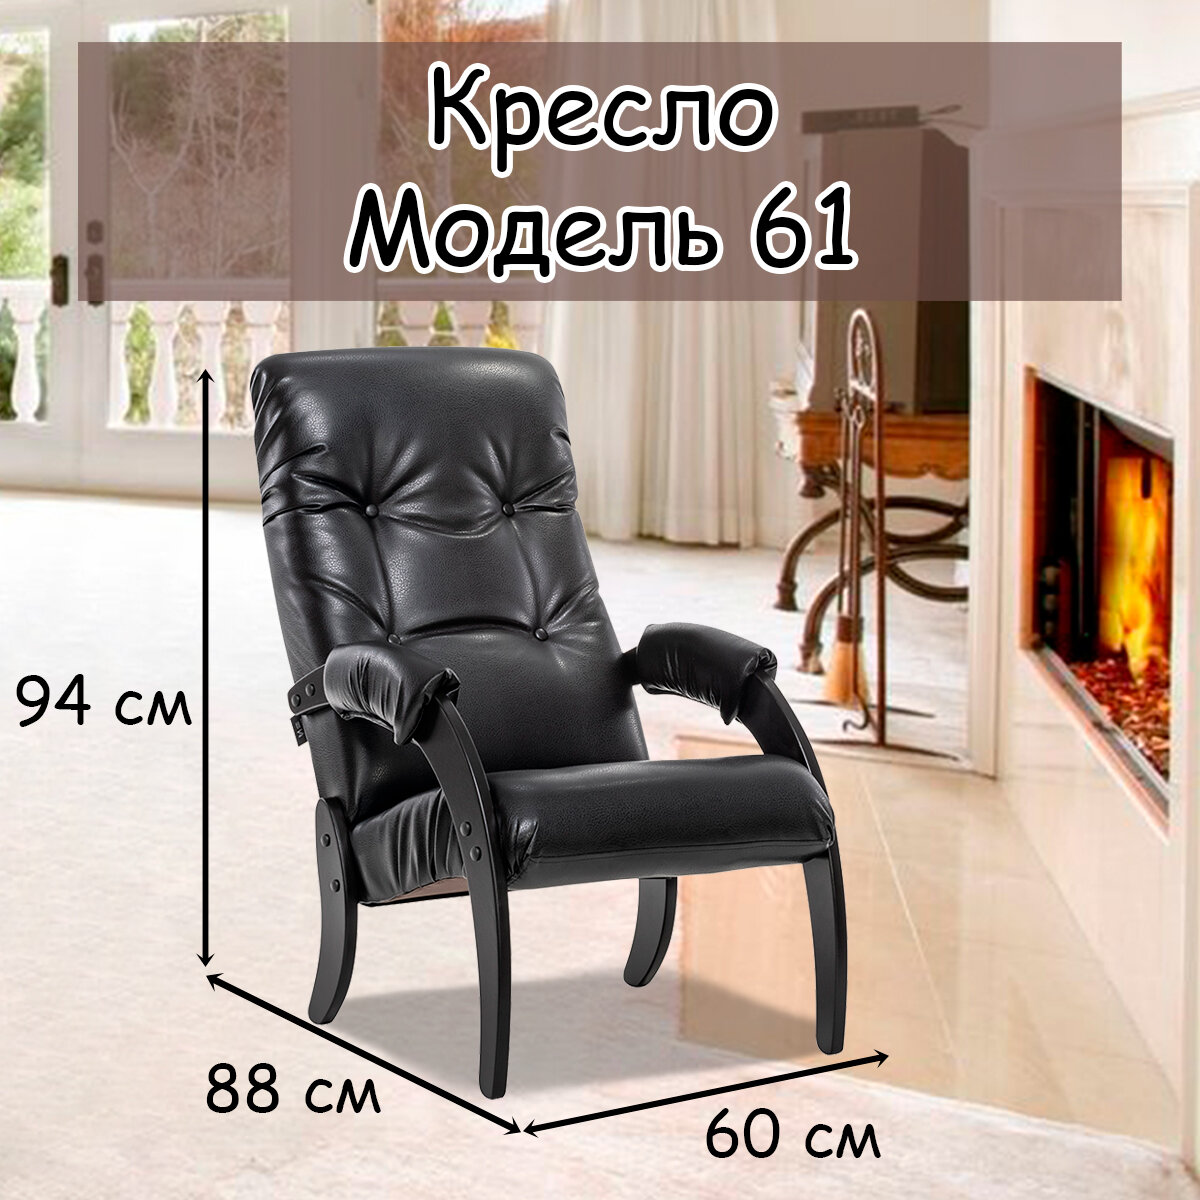 Кресло для взрослых 56х79х98 см, модель 61, экокожа, цвет: Vegas lite black (черный), каркас: Venge (черный) - фотография № 1